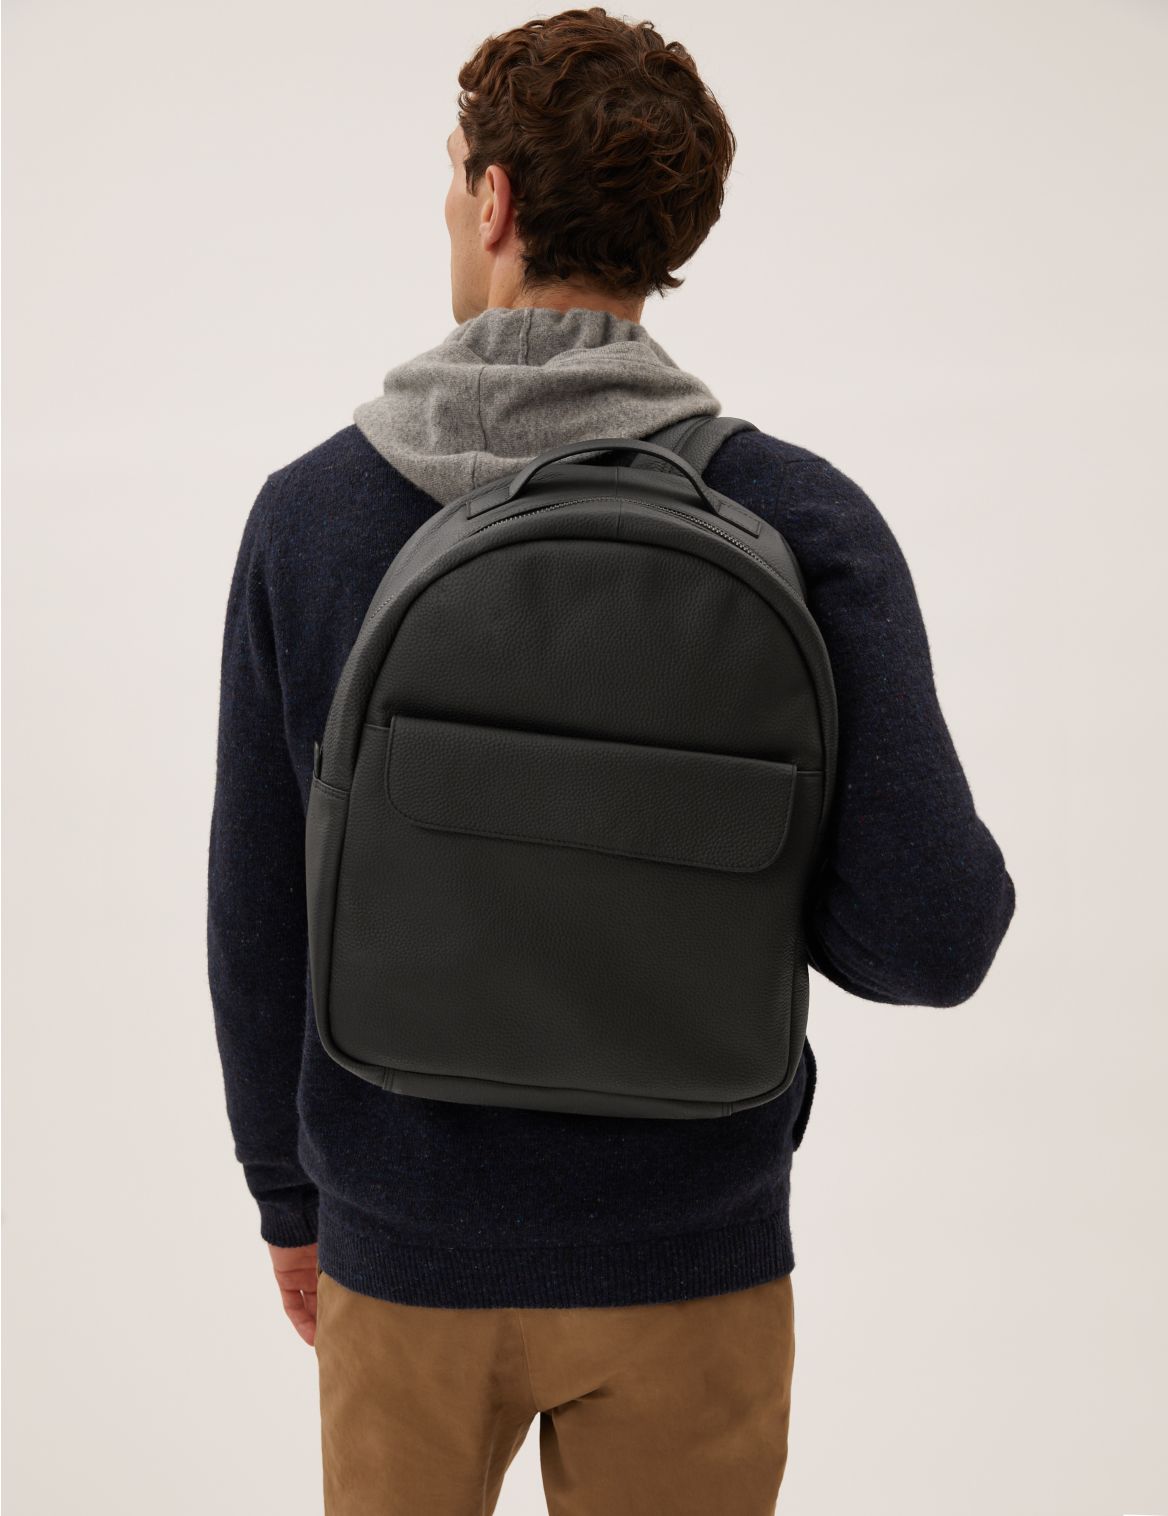 Leather Pocket Backpack black